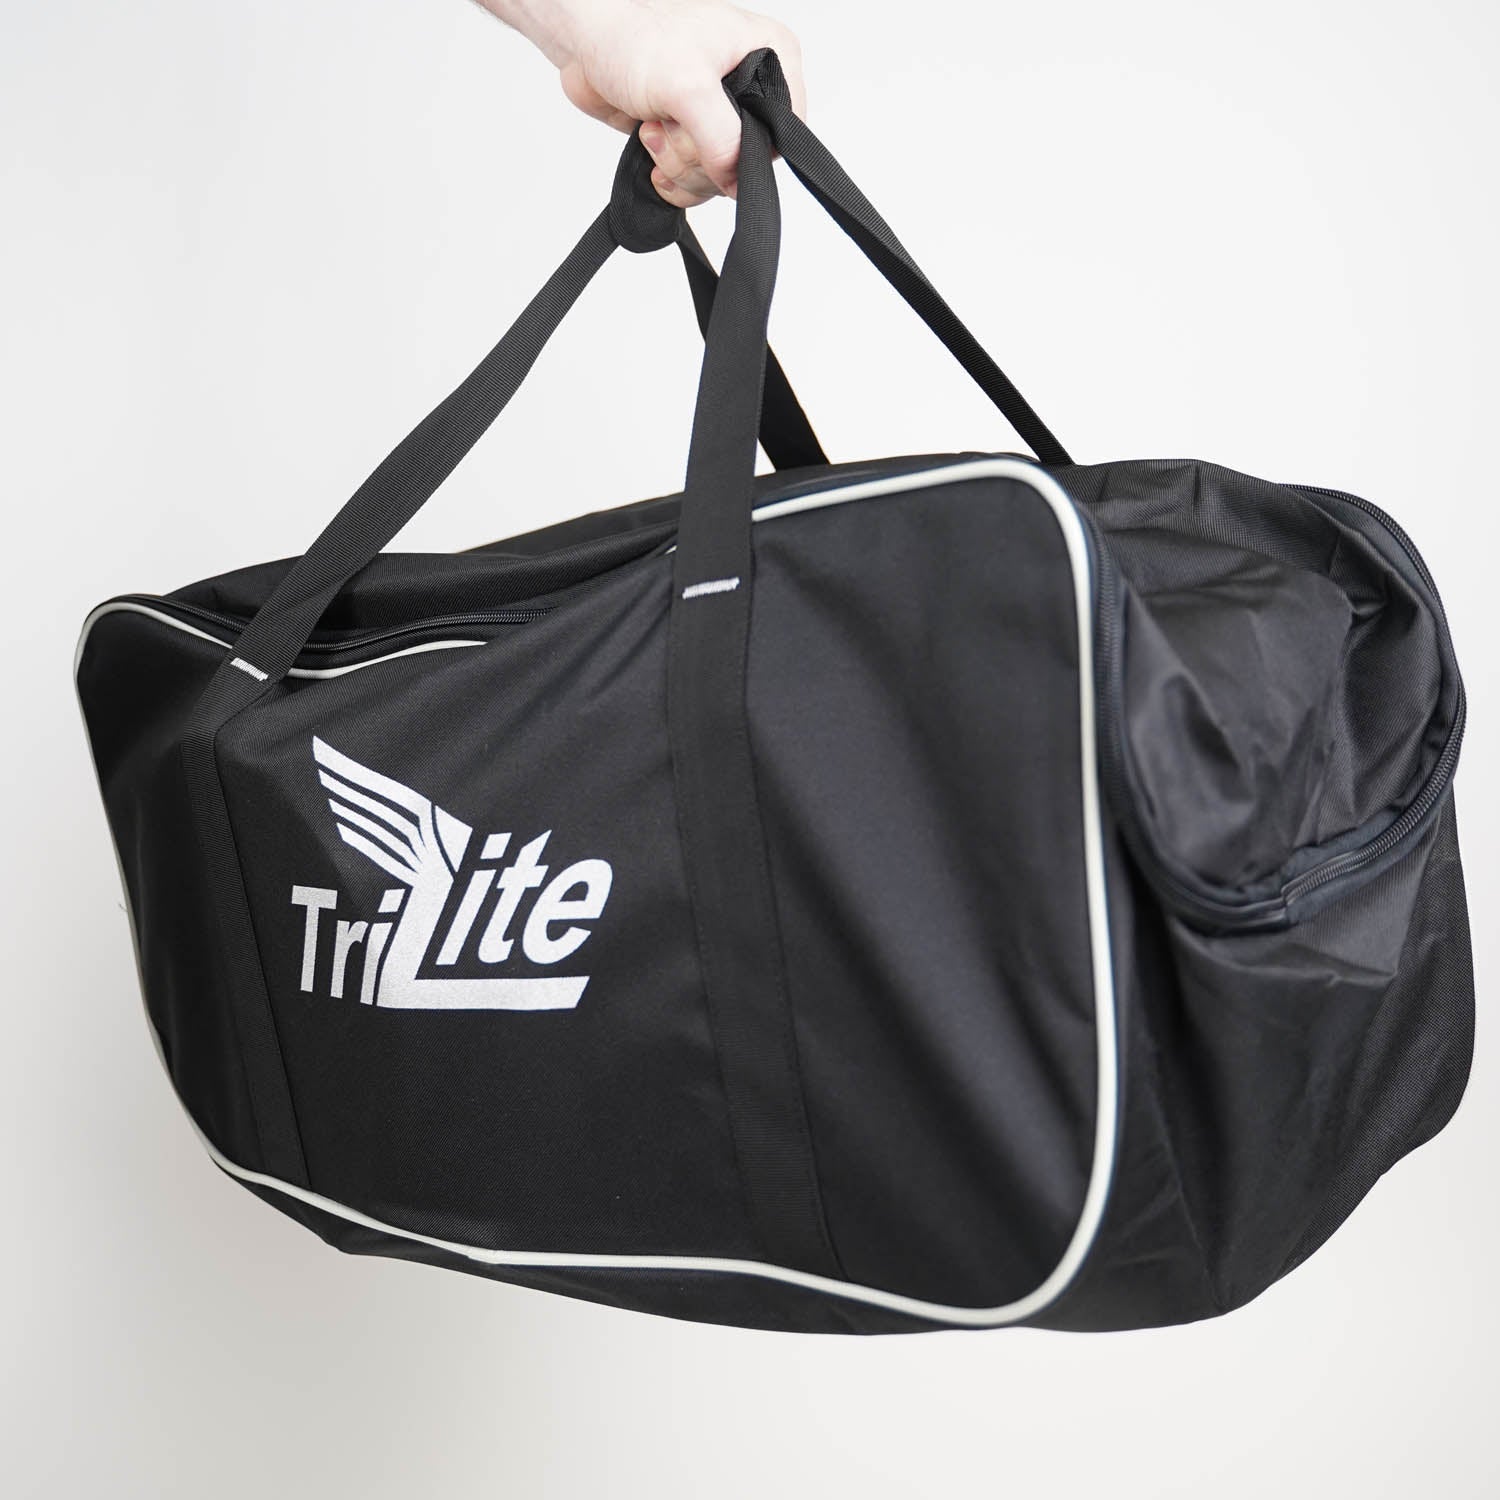 Trilite Carry Bag